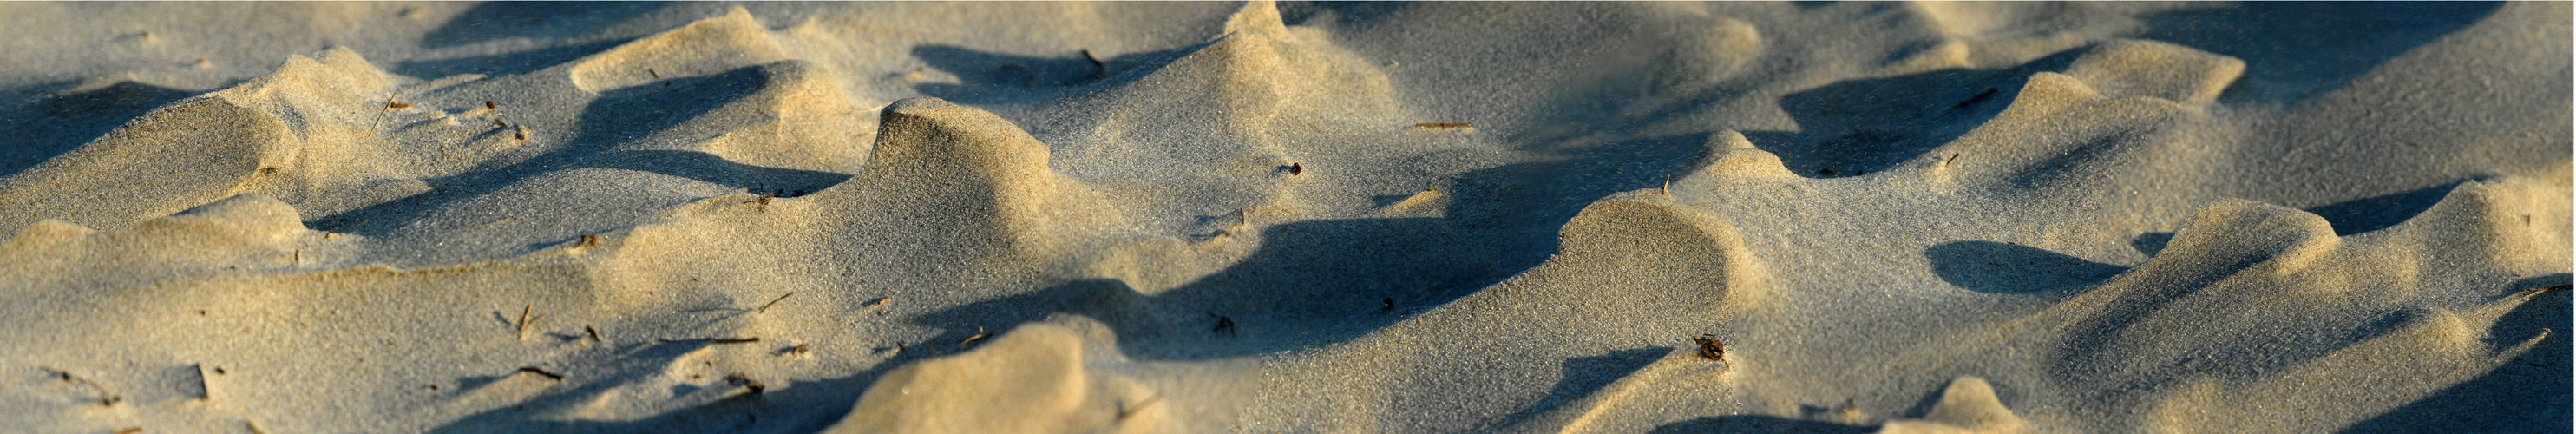 Stranddünen  auf Langeoog